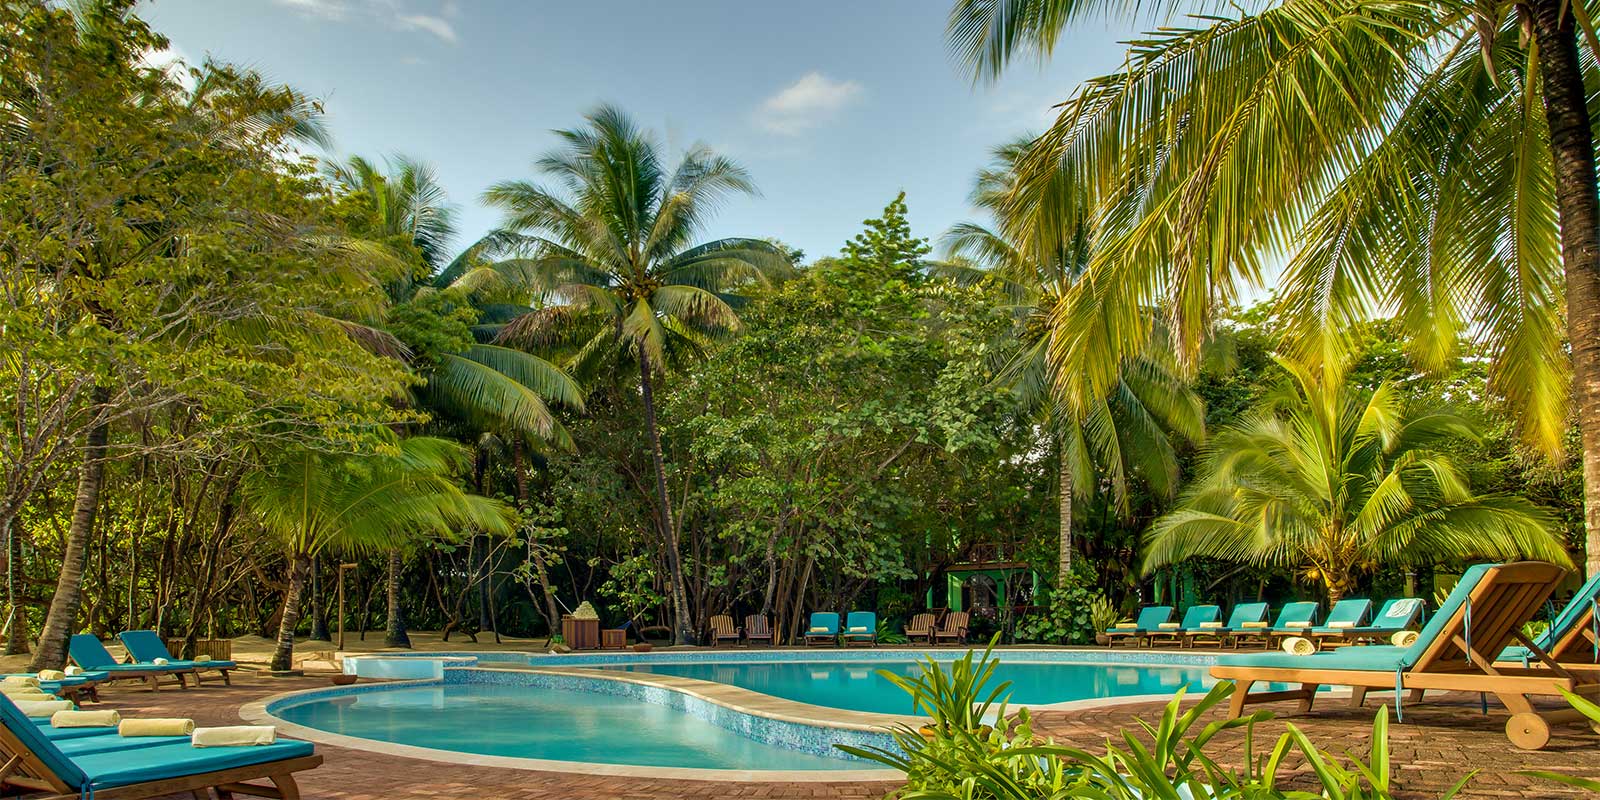 Swimming pool at Hamanasi Resort in Belize